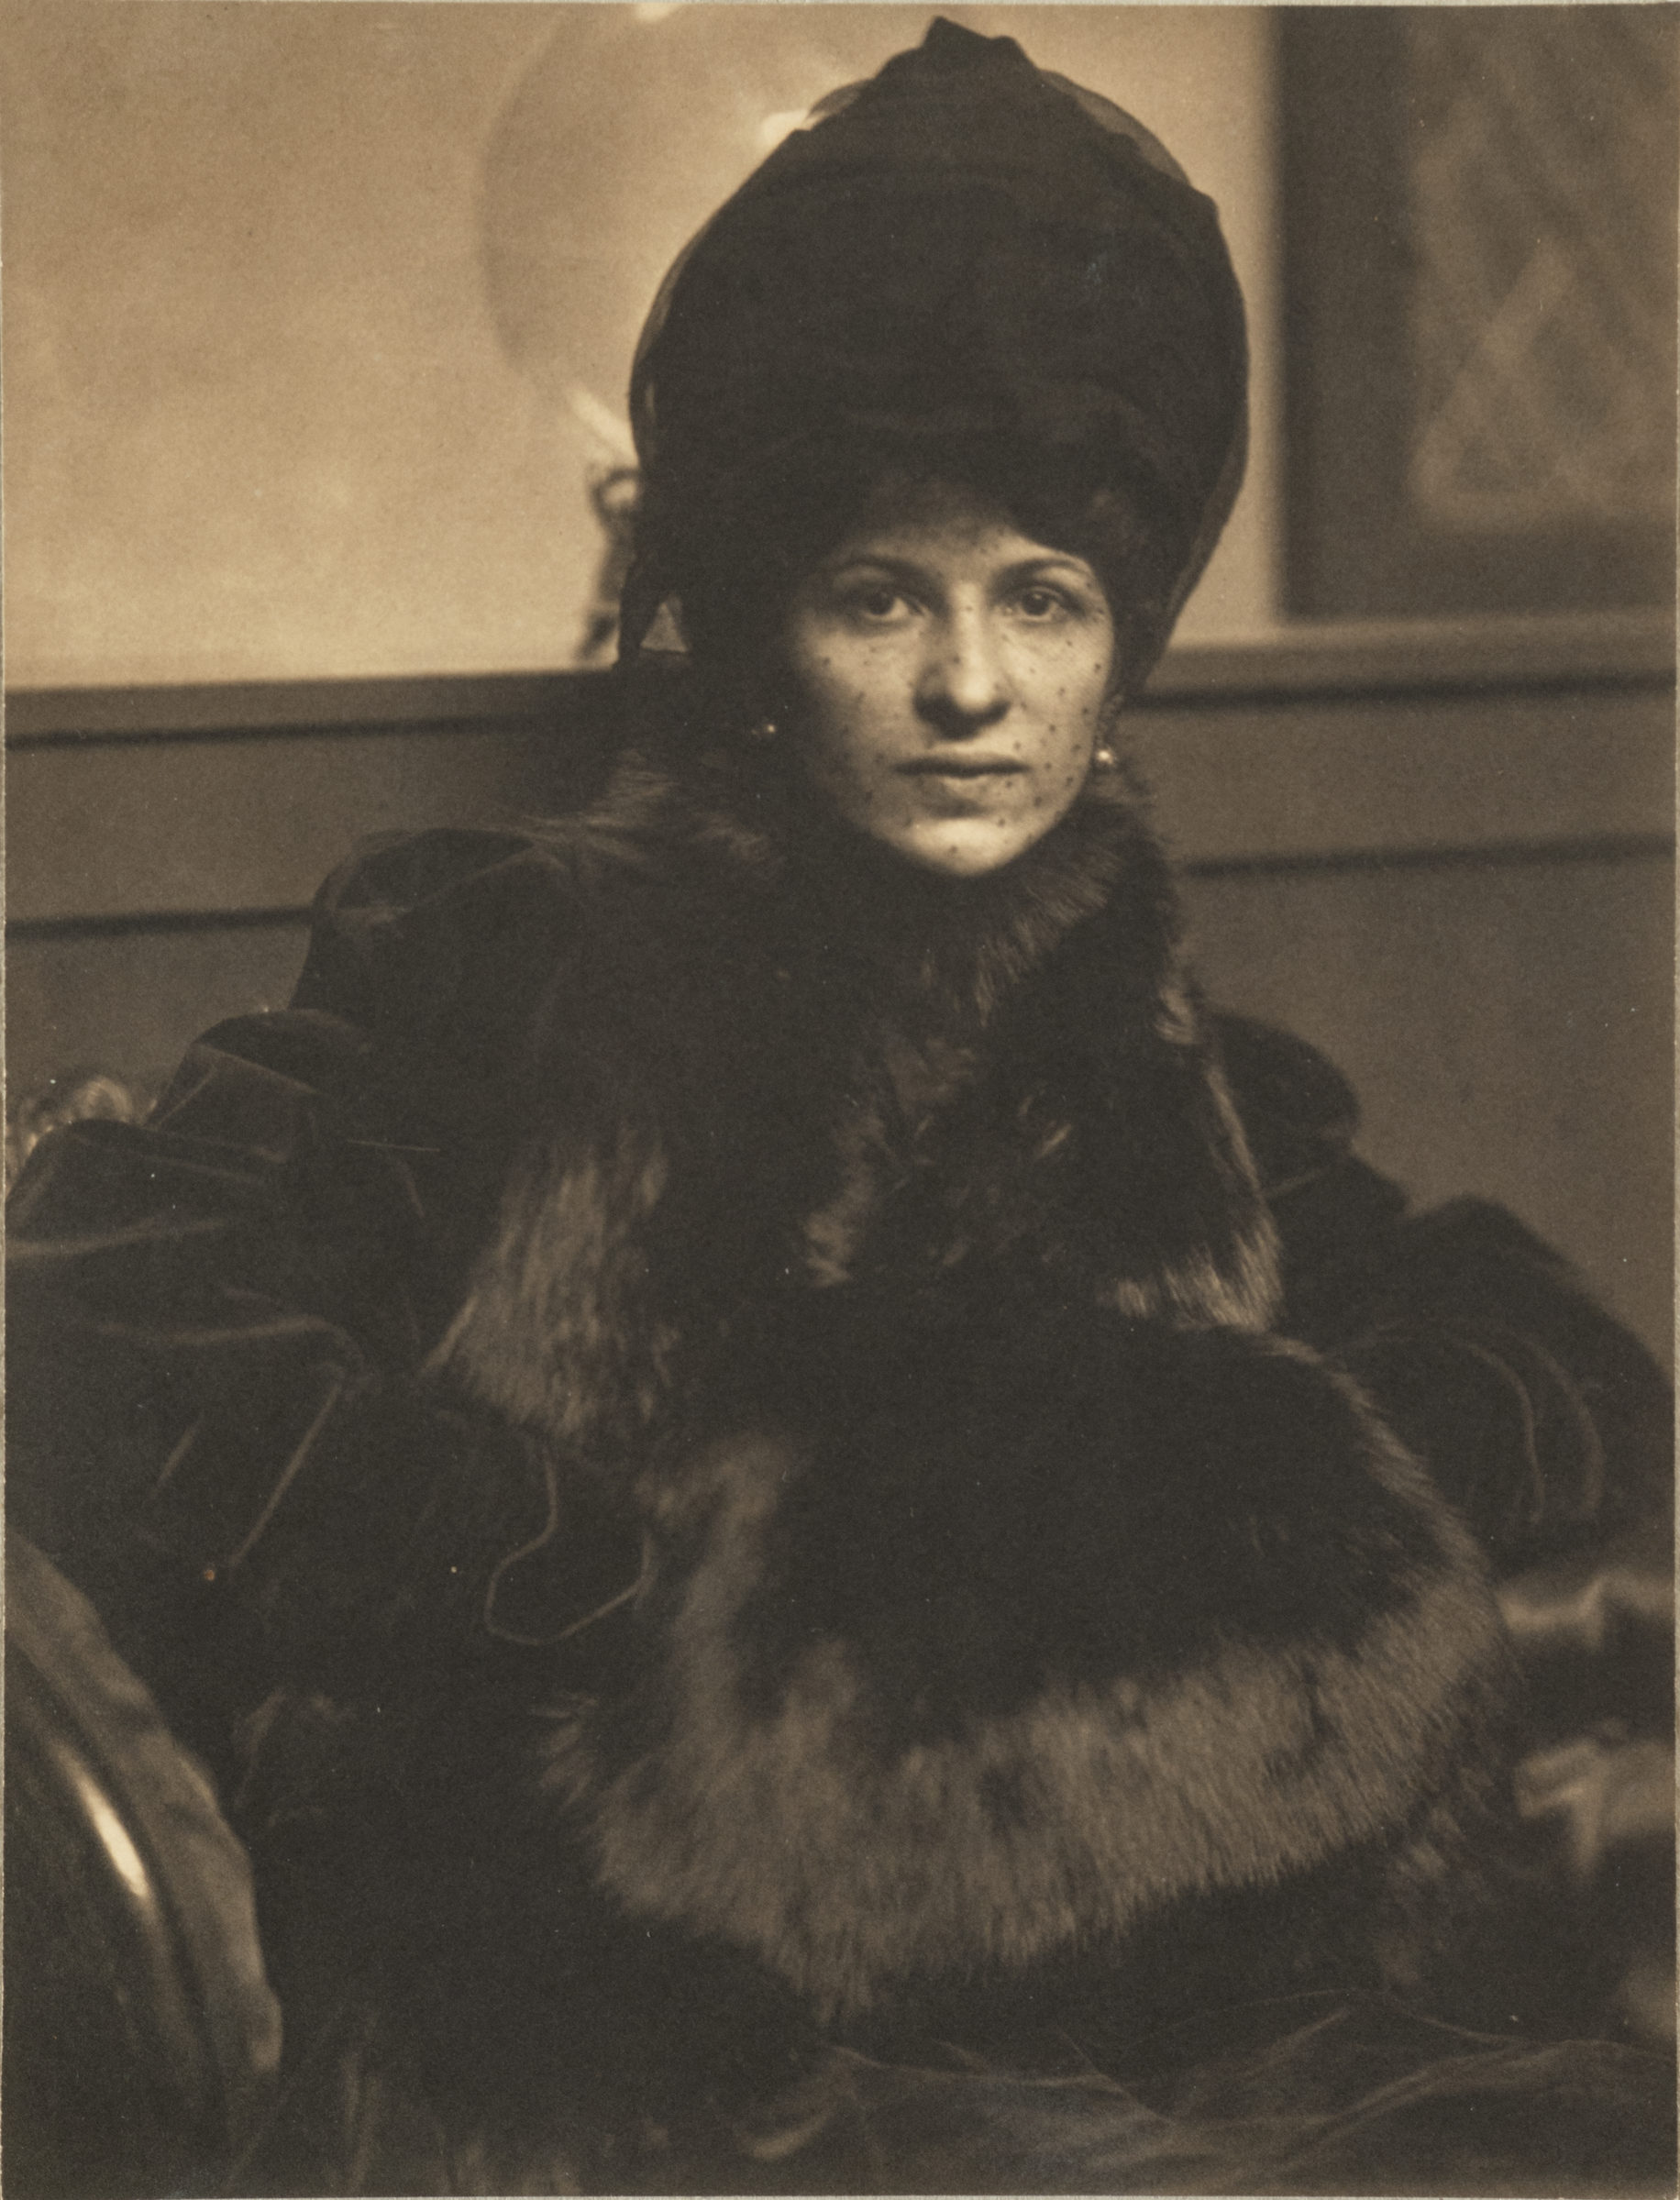 Portretul lui Eulabee Dix by Gertrude Käsebier - cca. 1910 - 7 7/8 x 6 in 